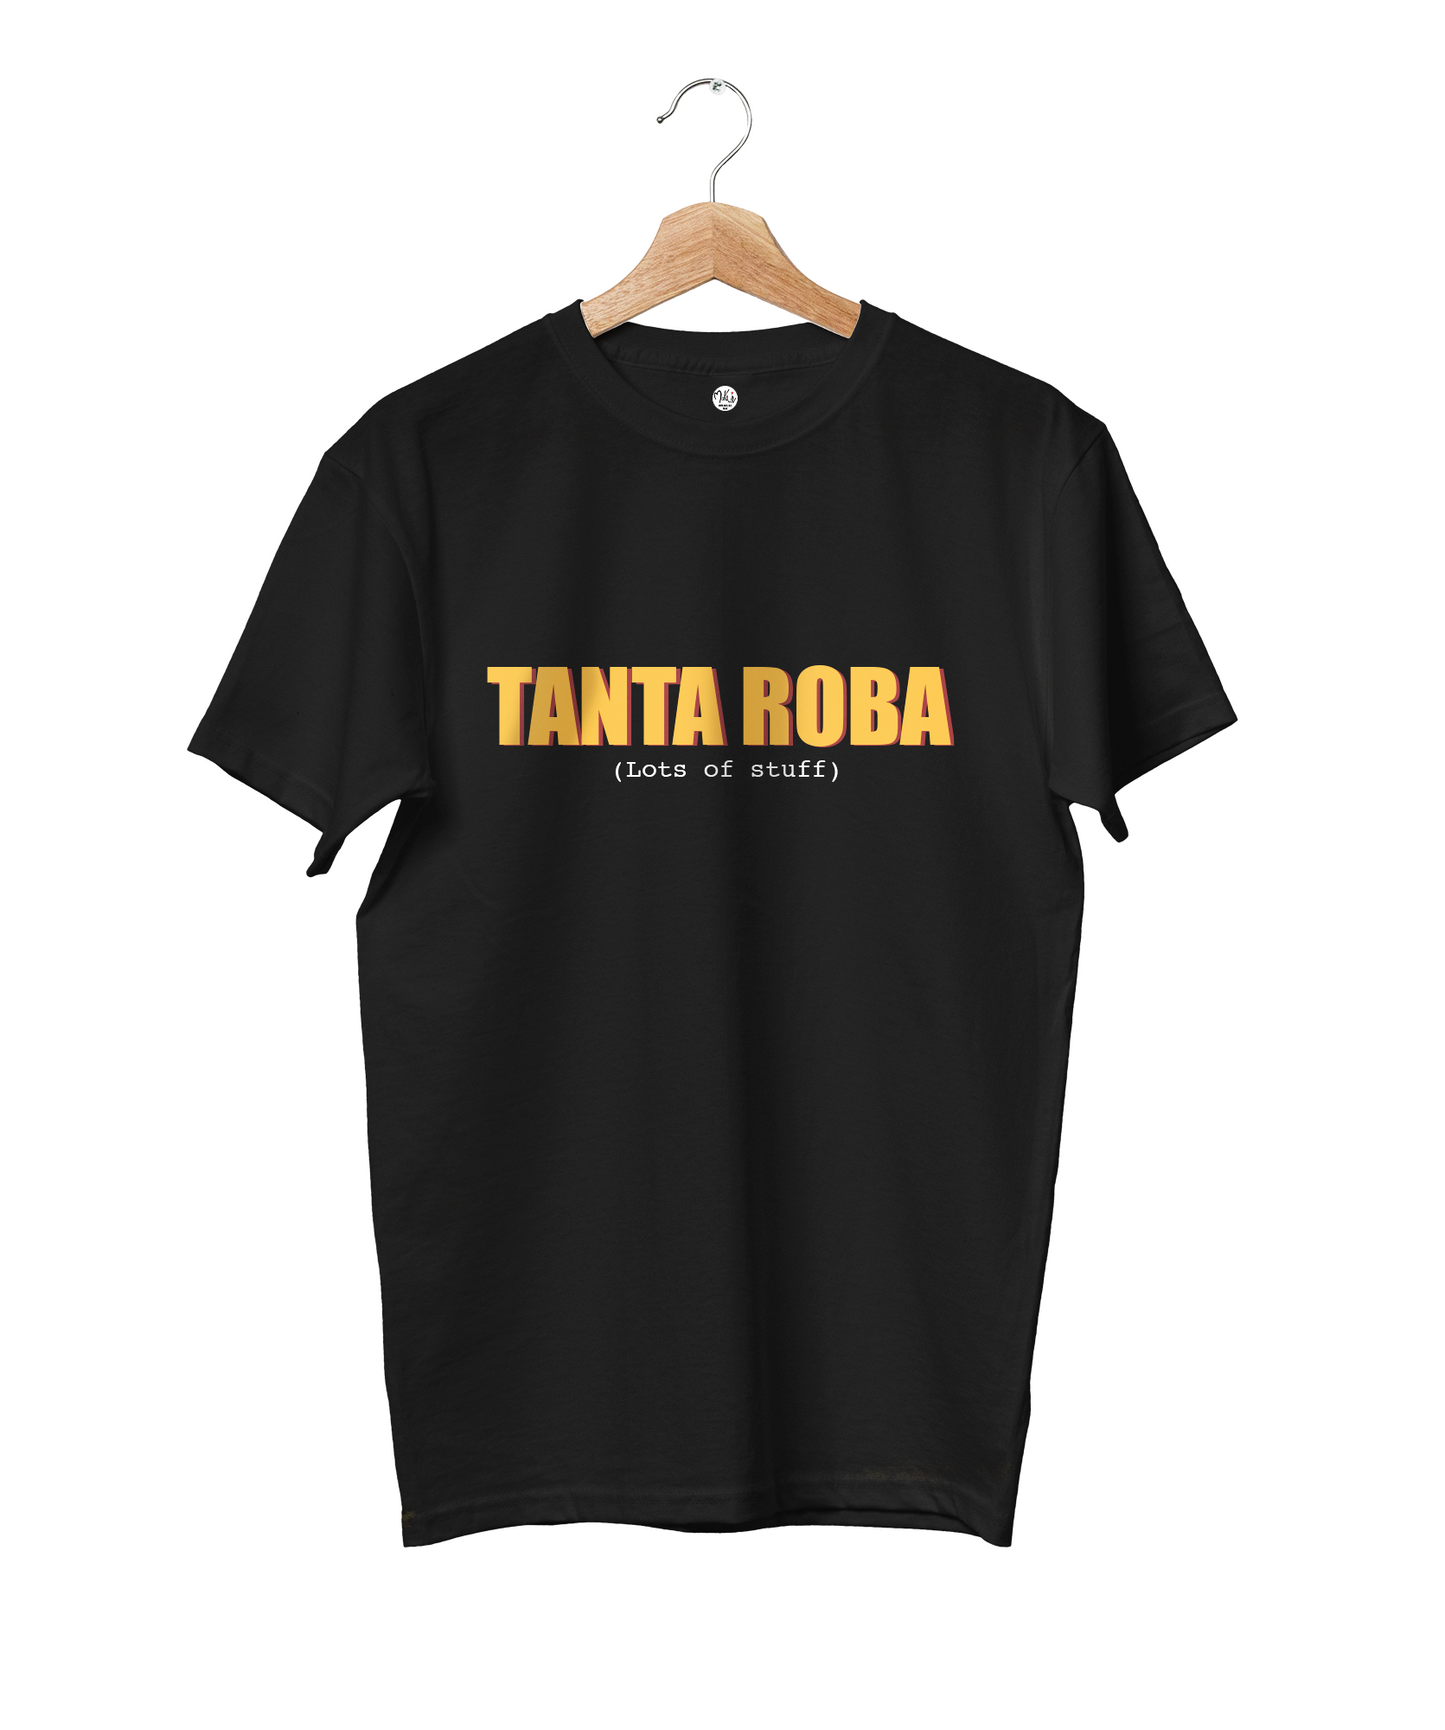 T-shirt Tanta Roba